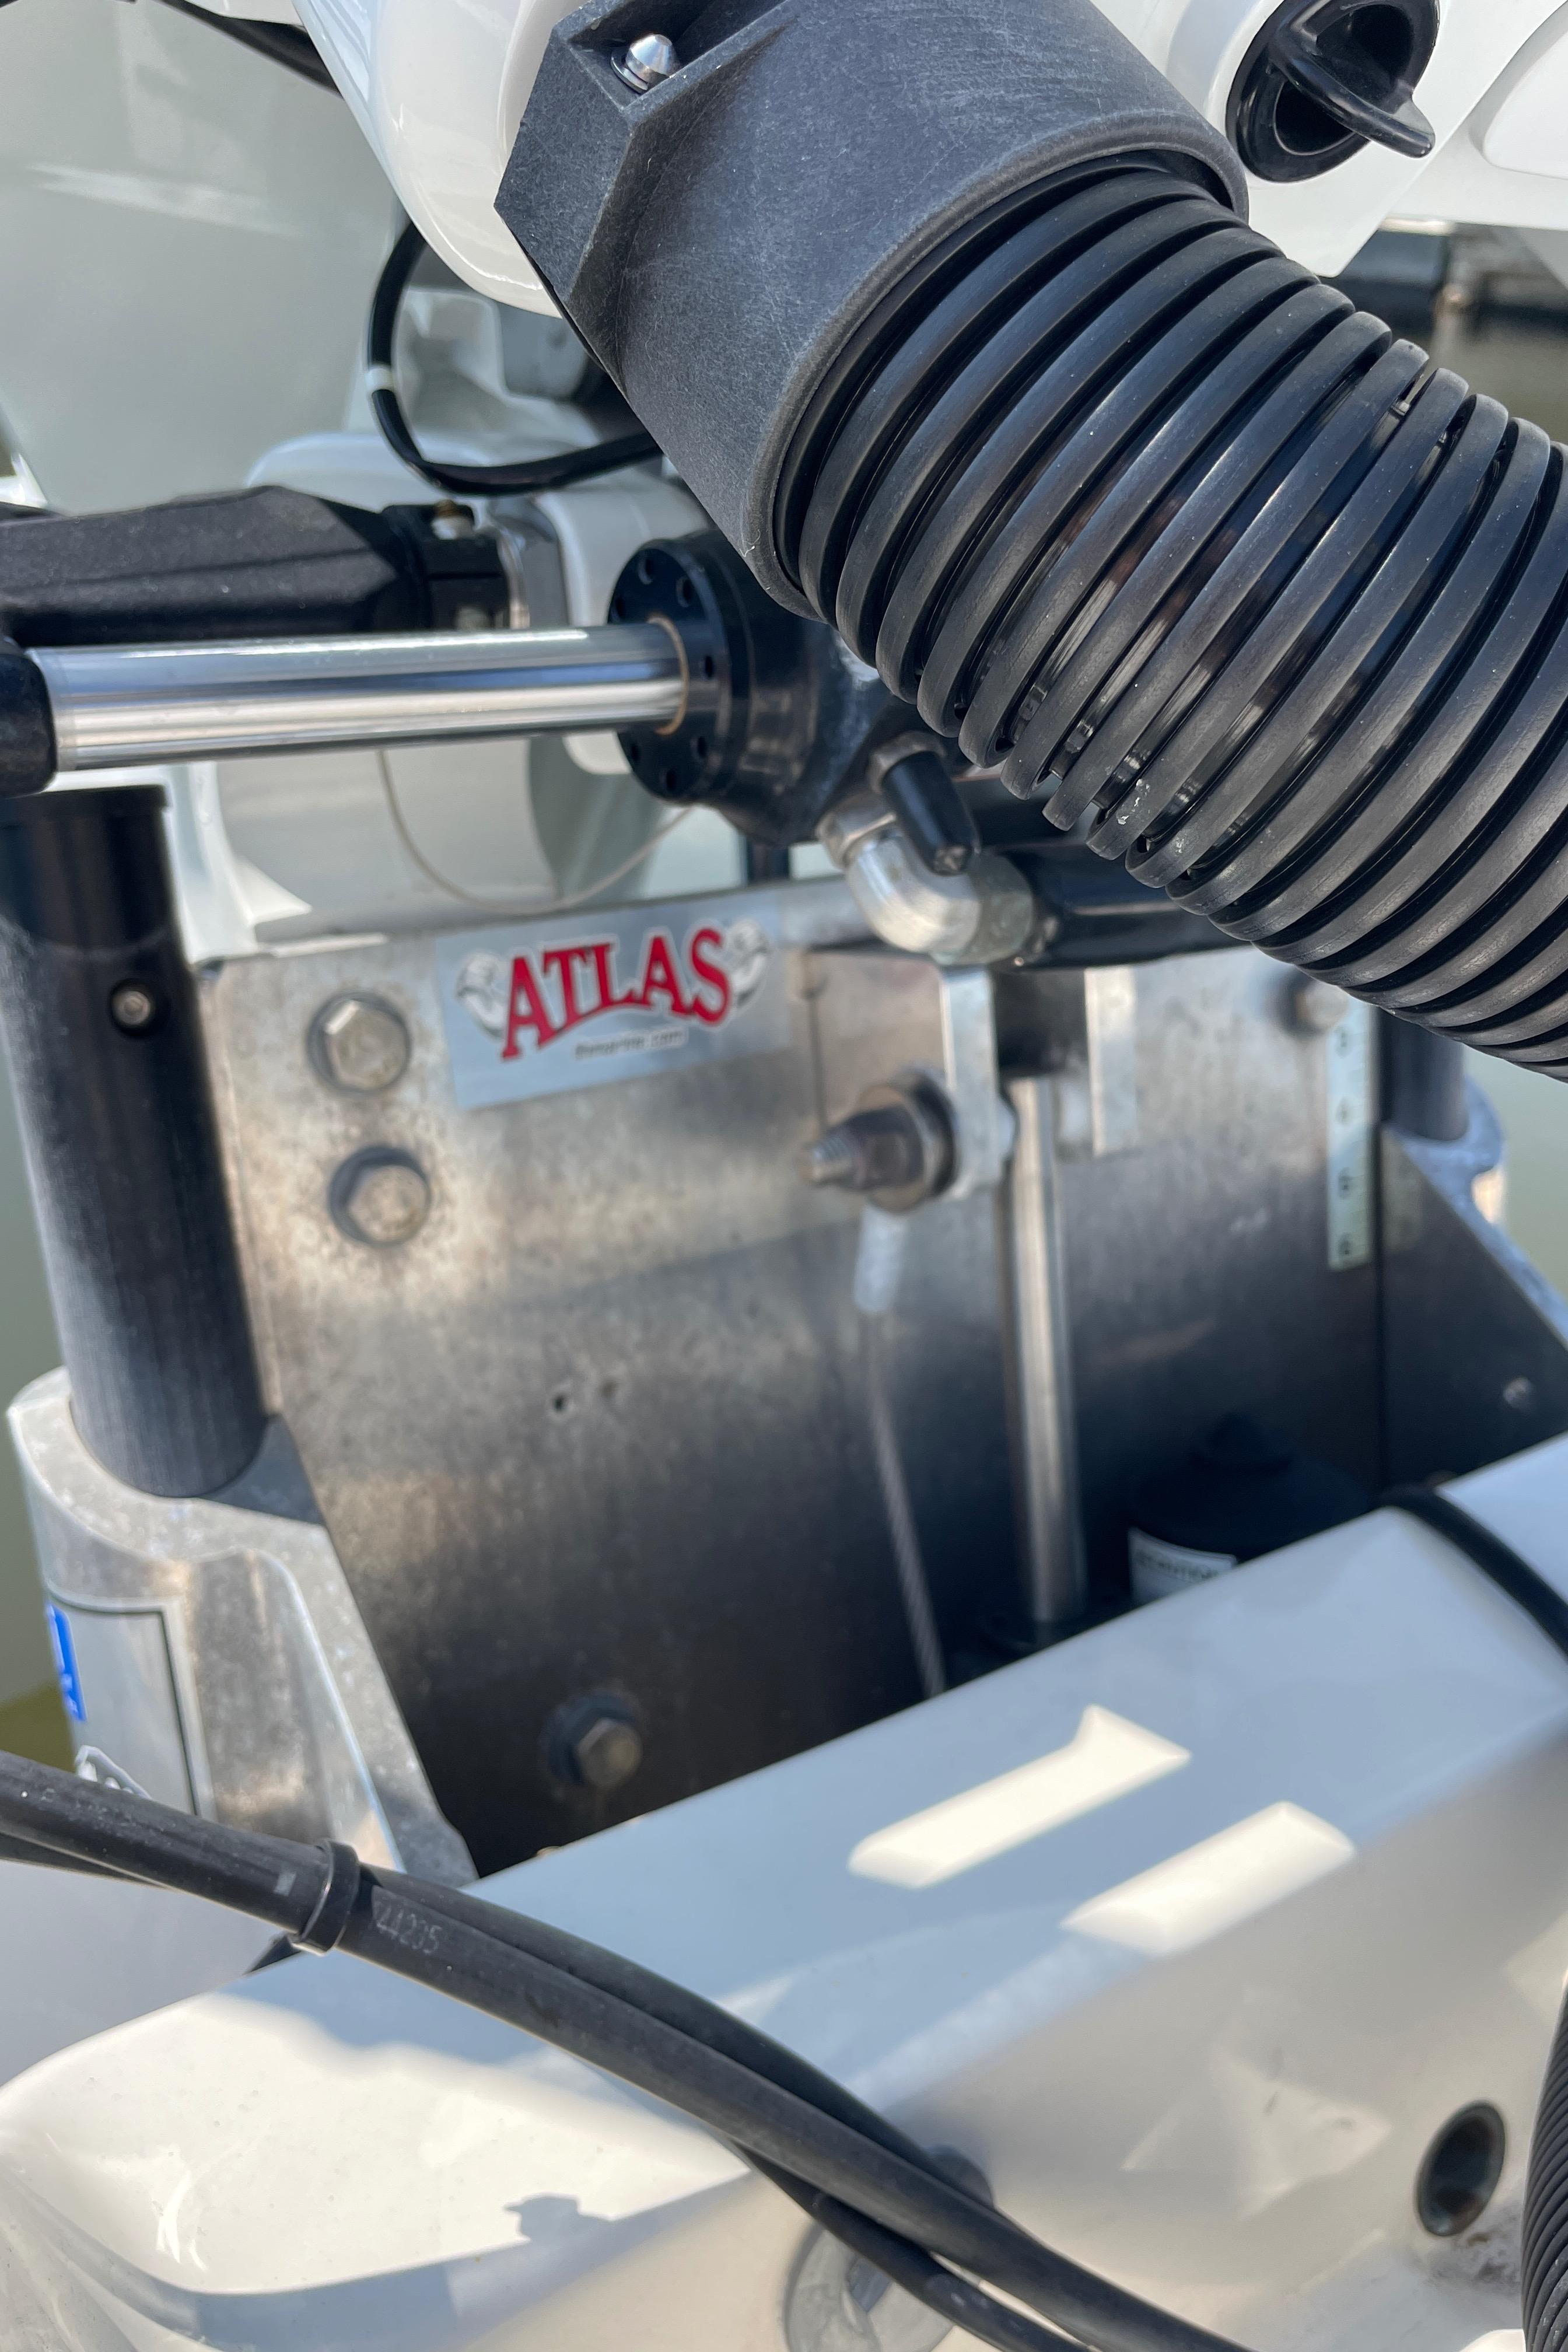 Avenger AV 26 Bay Boat - Atlas Power Jack Plate